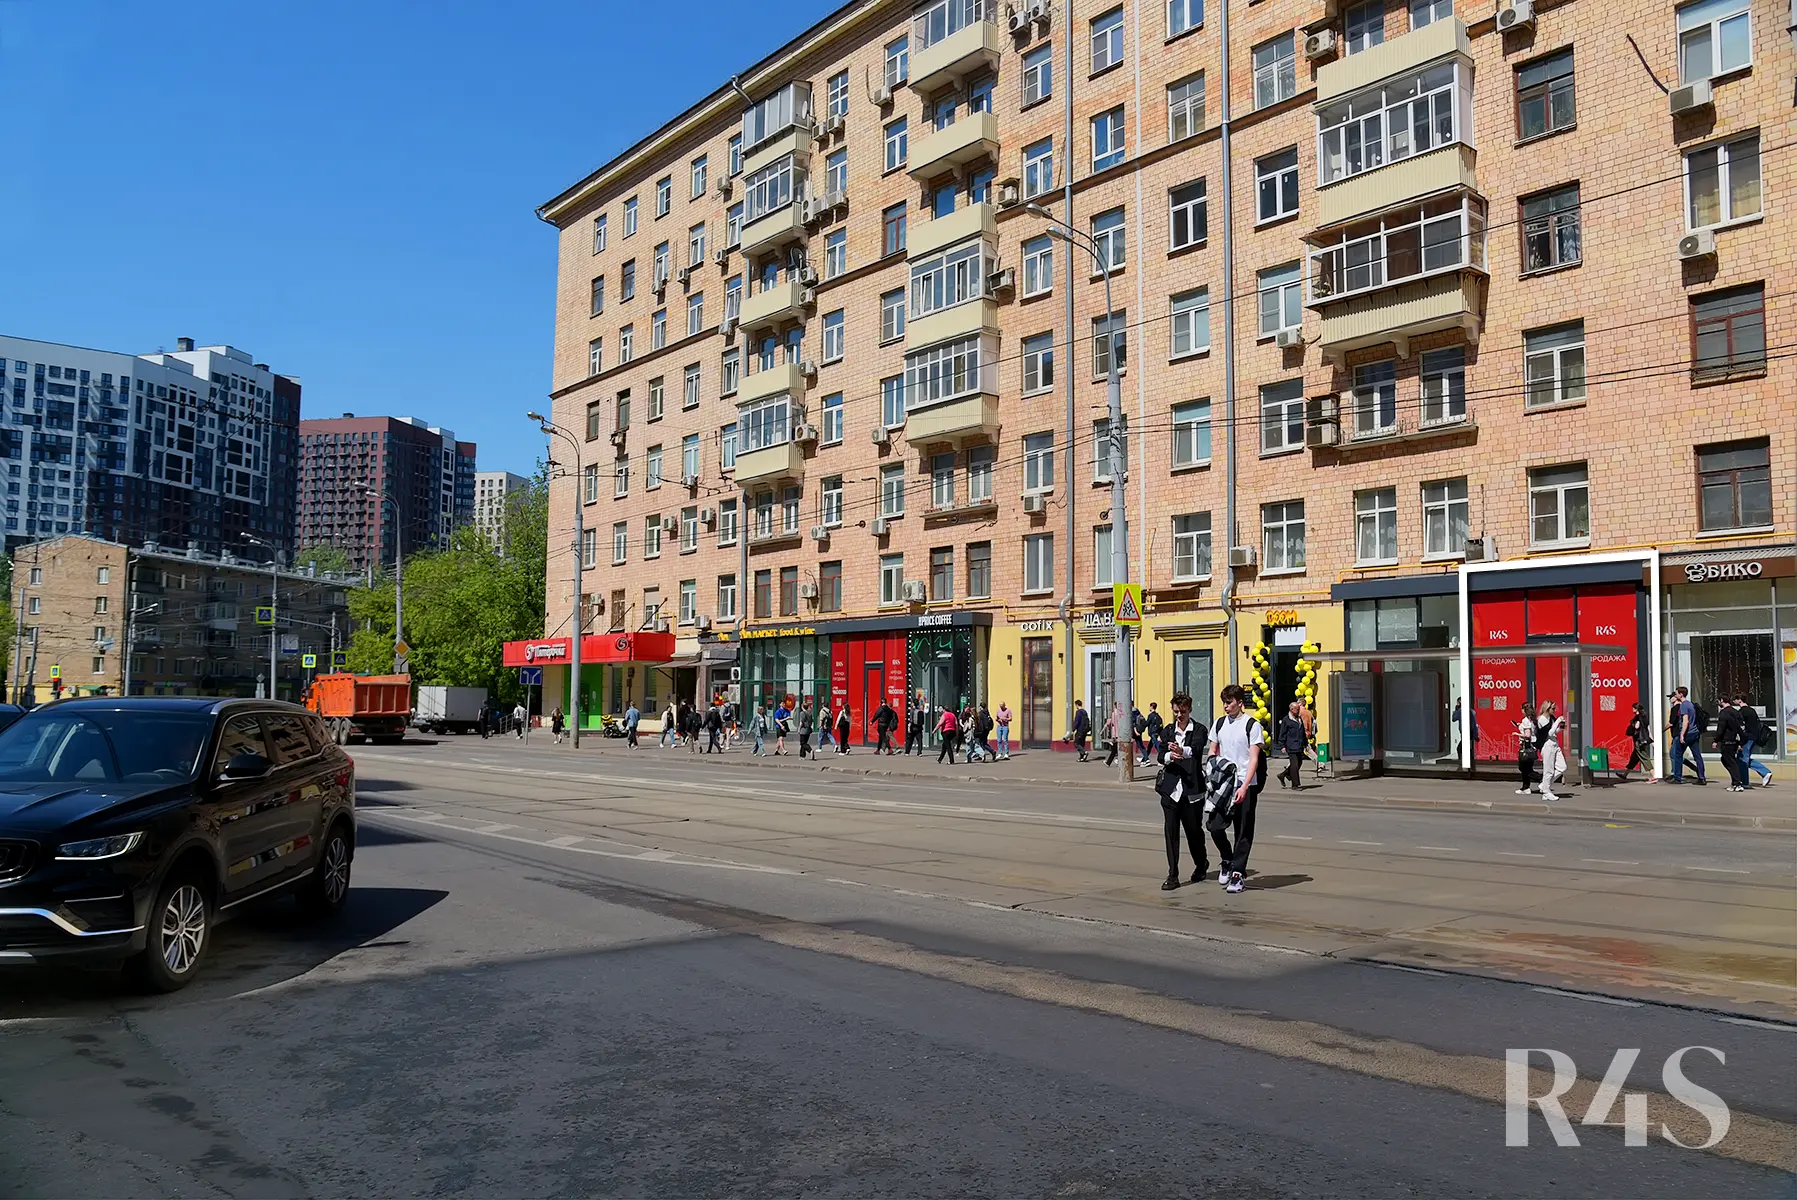 Аренда торгового помещения площадью 168.6 м2 в Москве: Красноказарменная, 23 R4S | Realty4Sale